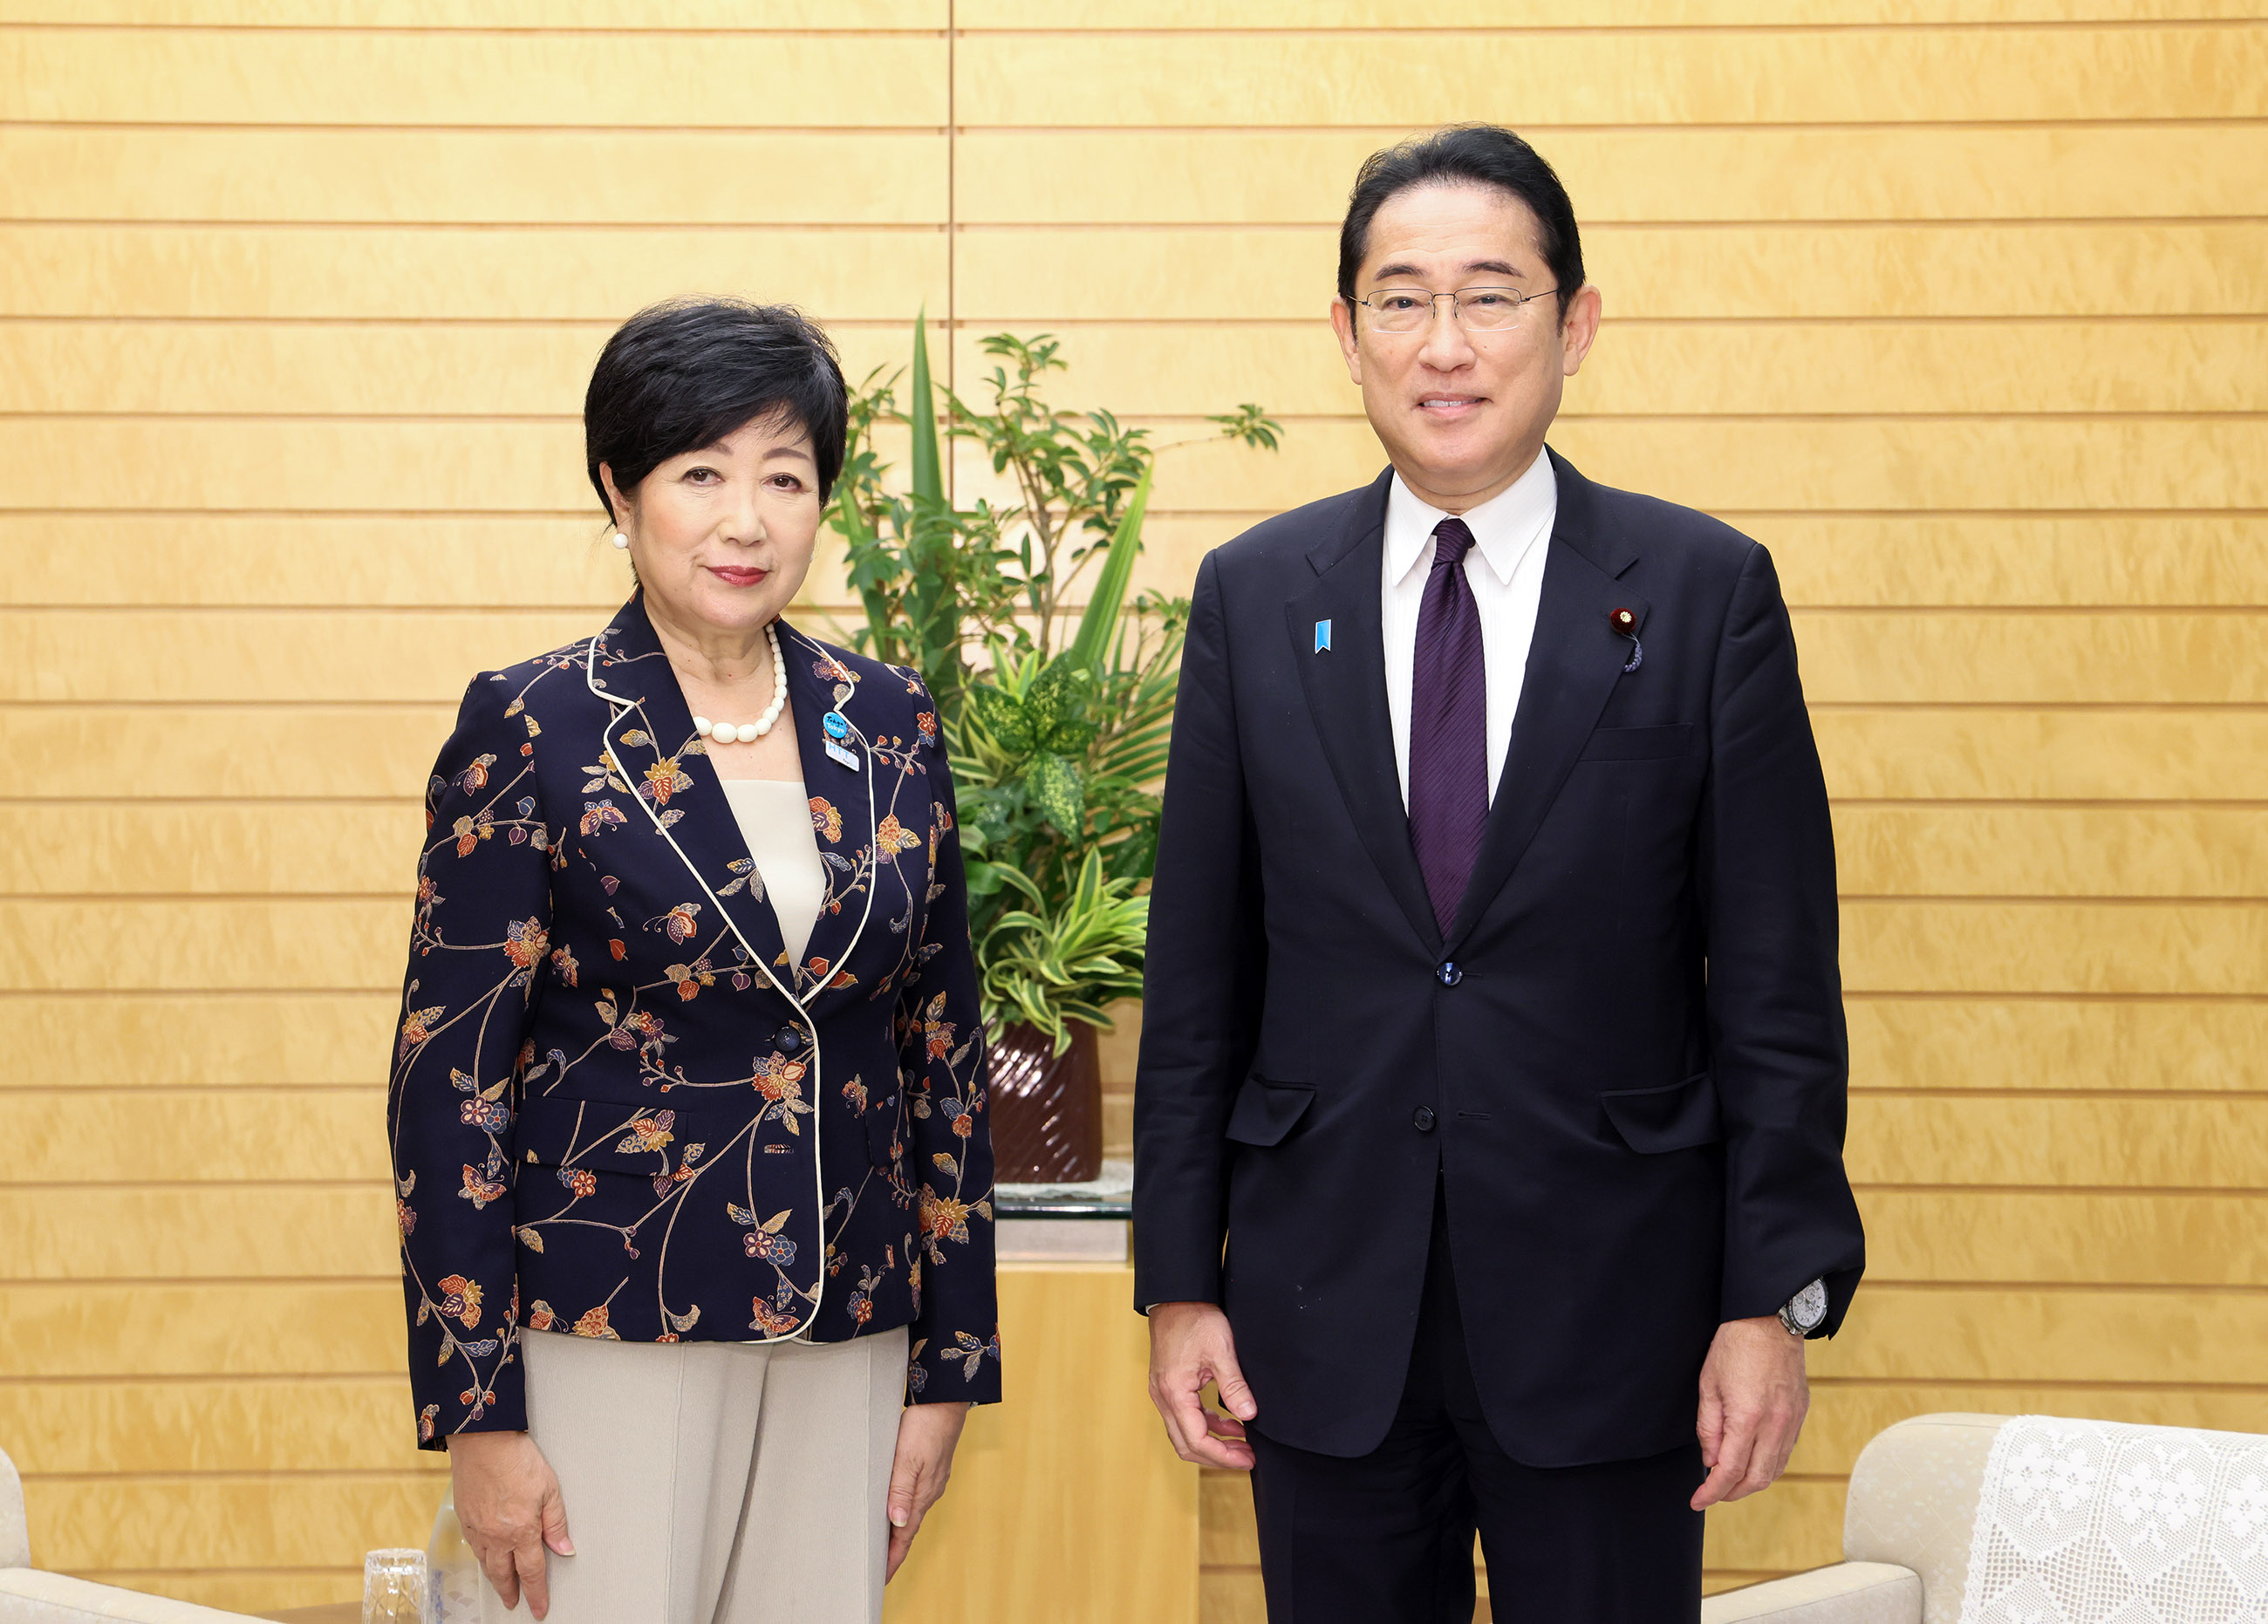 Prime Minister Kishida holding a meeting